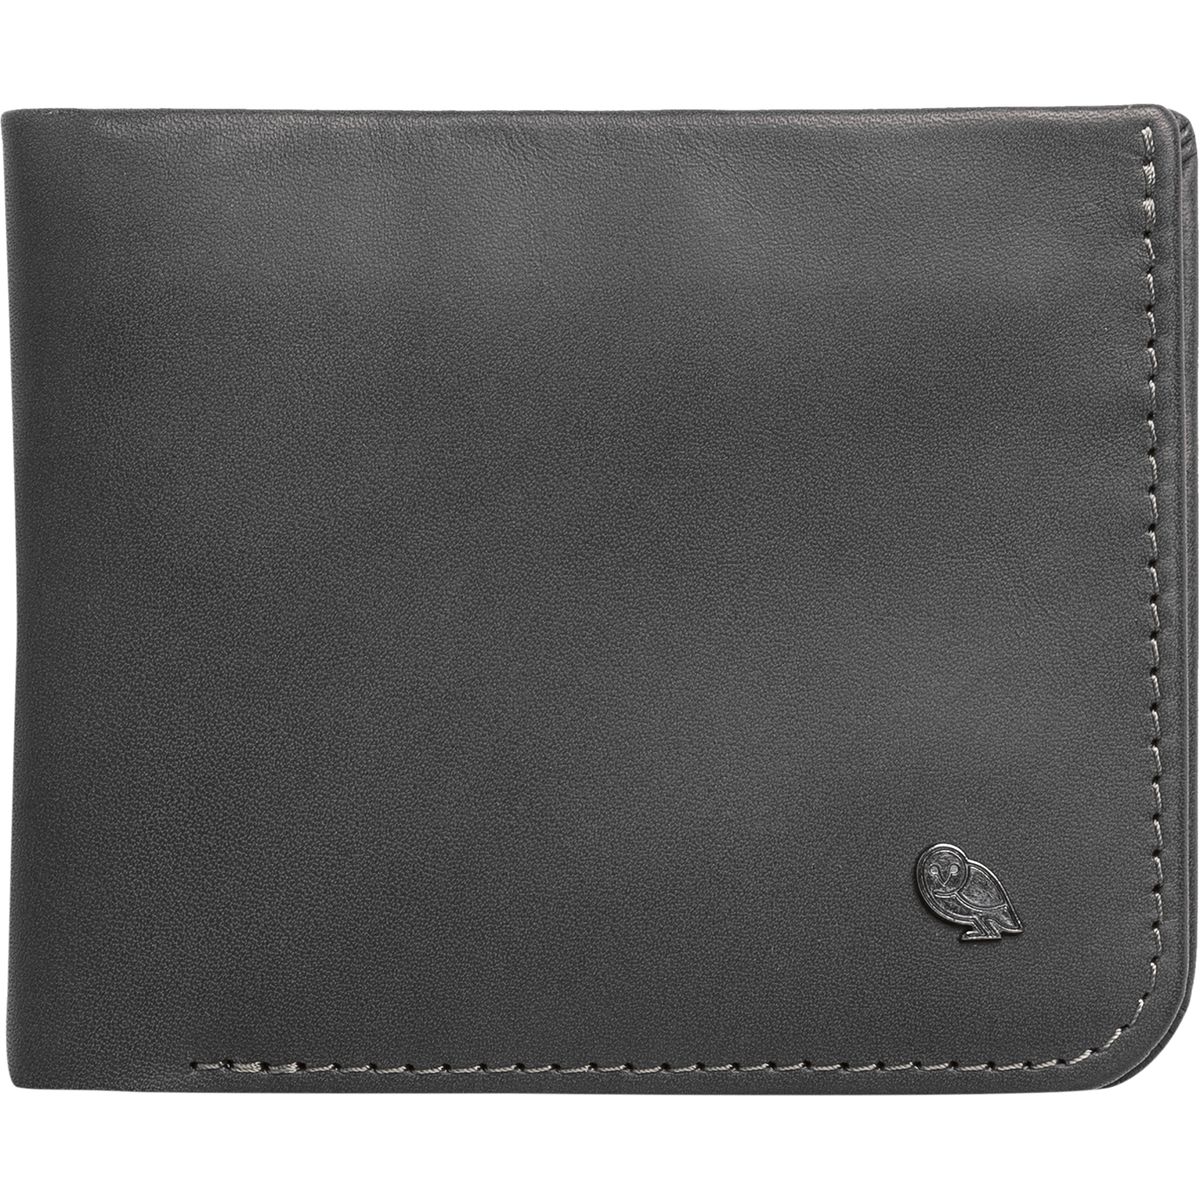 Bellroy Hide & Seek Bi-Fold Wallet - Men's | Backcountry.com